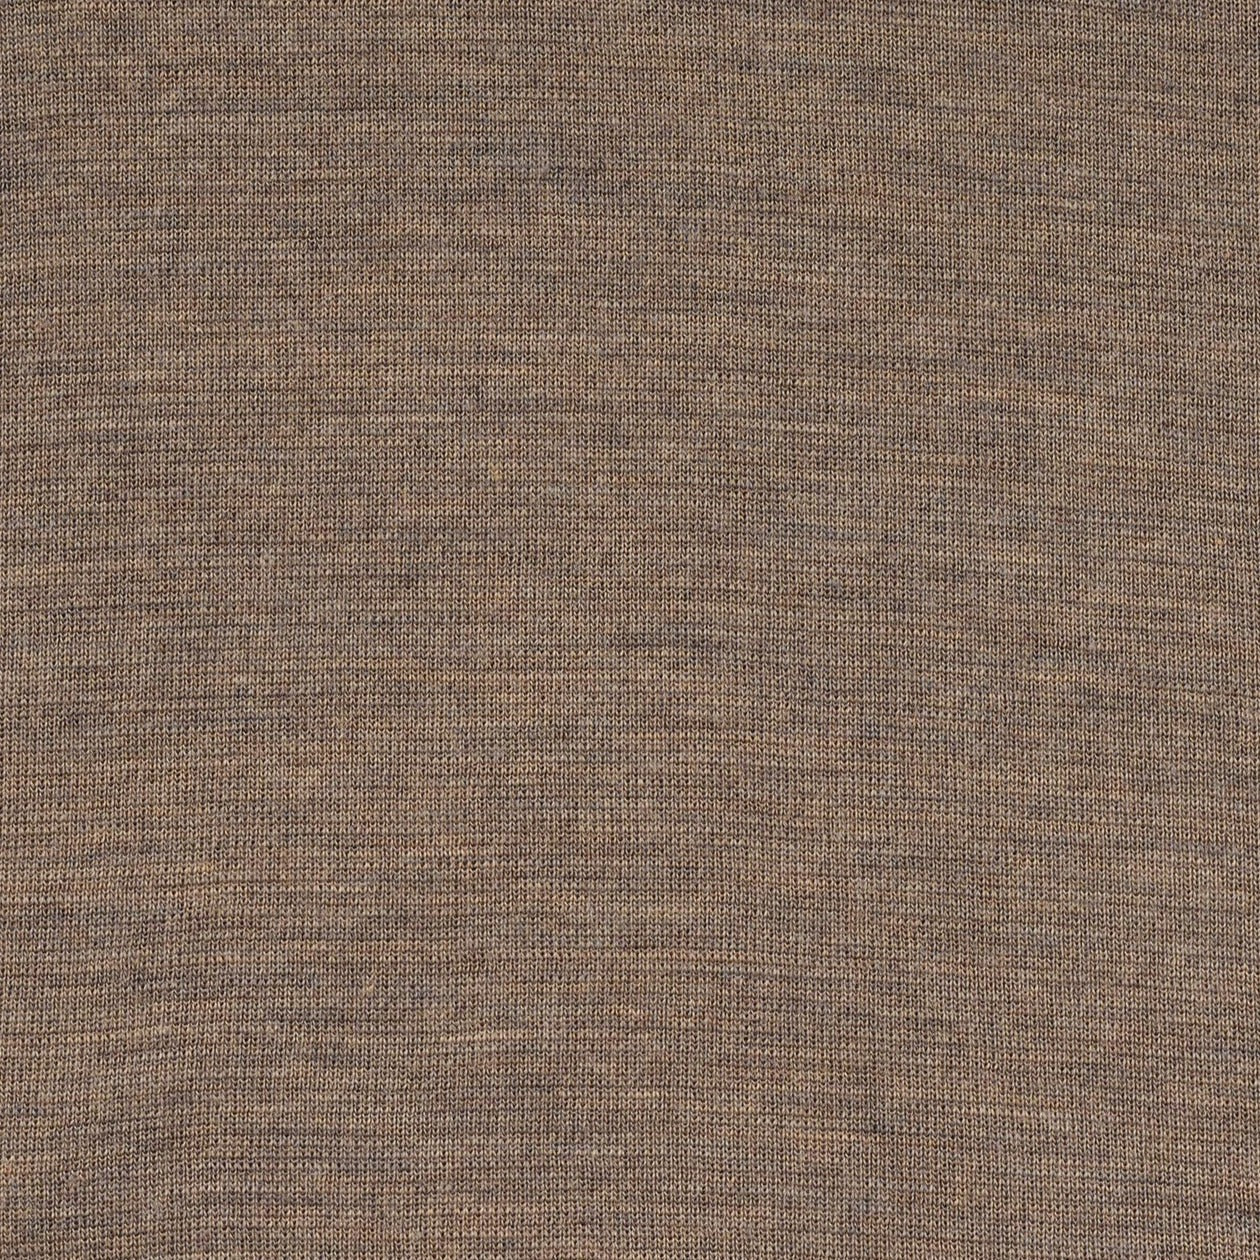 Load image into Gallery viewer, Engel Wool Repair Patch, 100% Fine Wool
